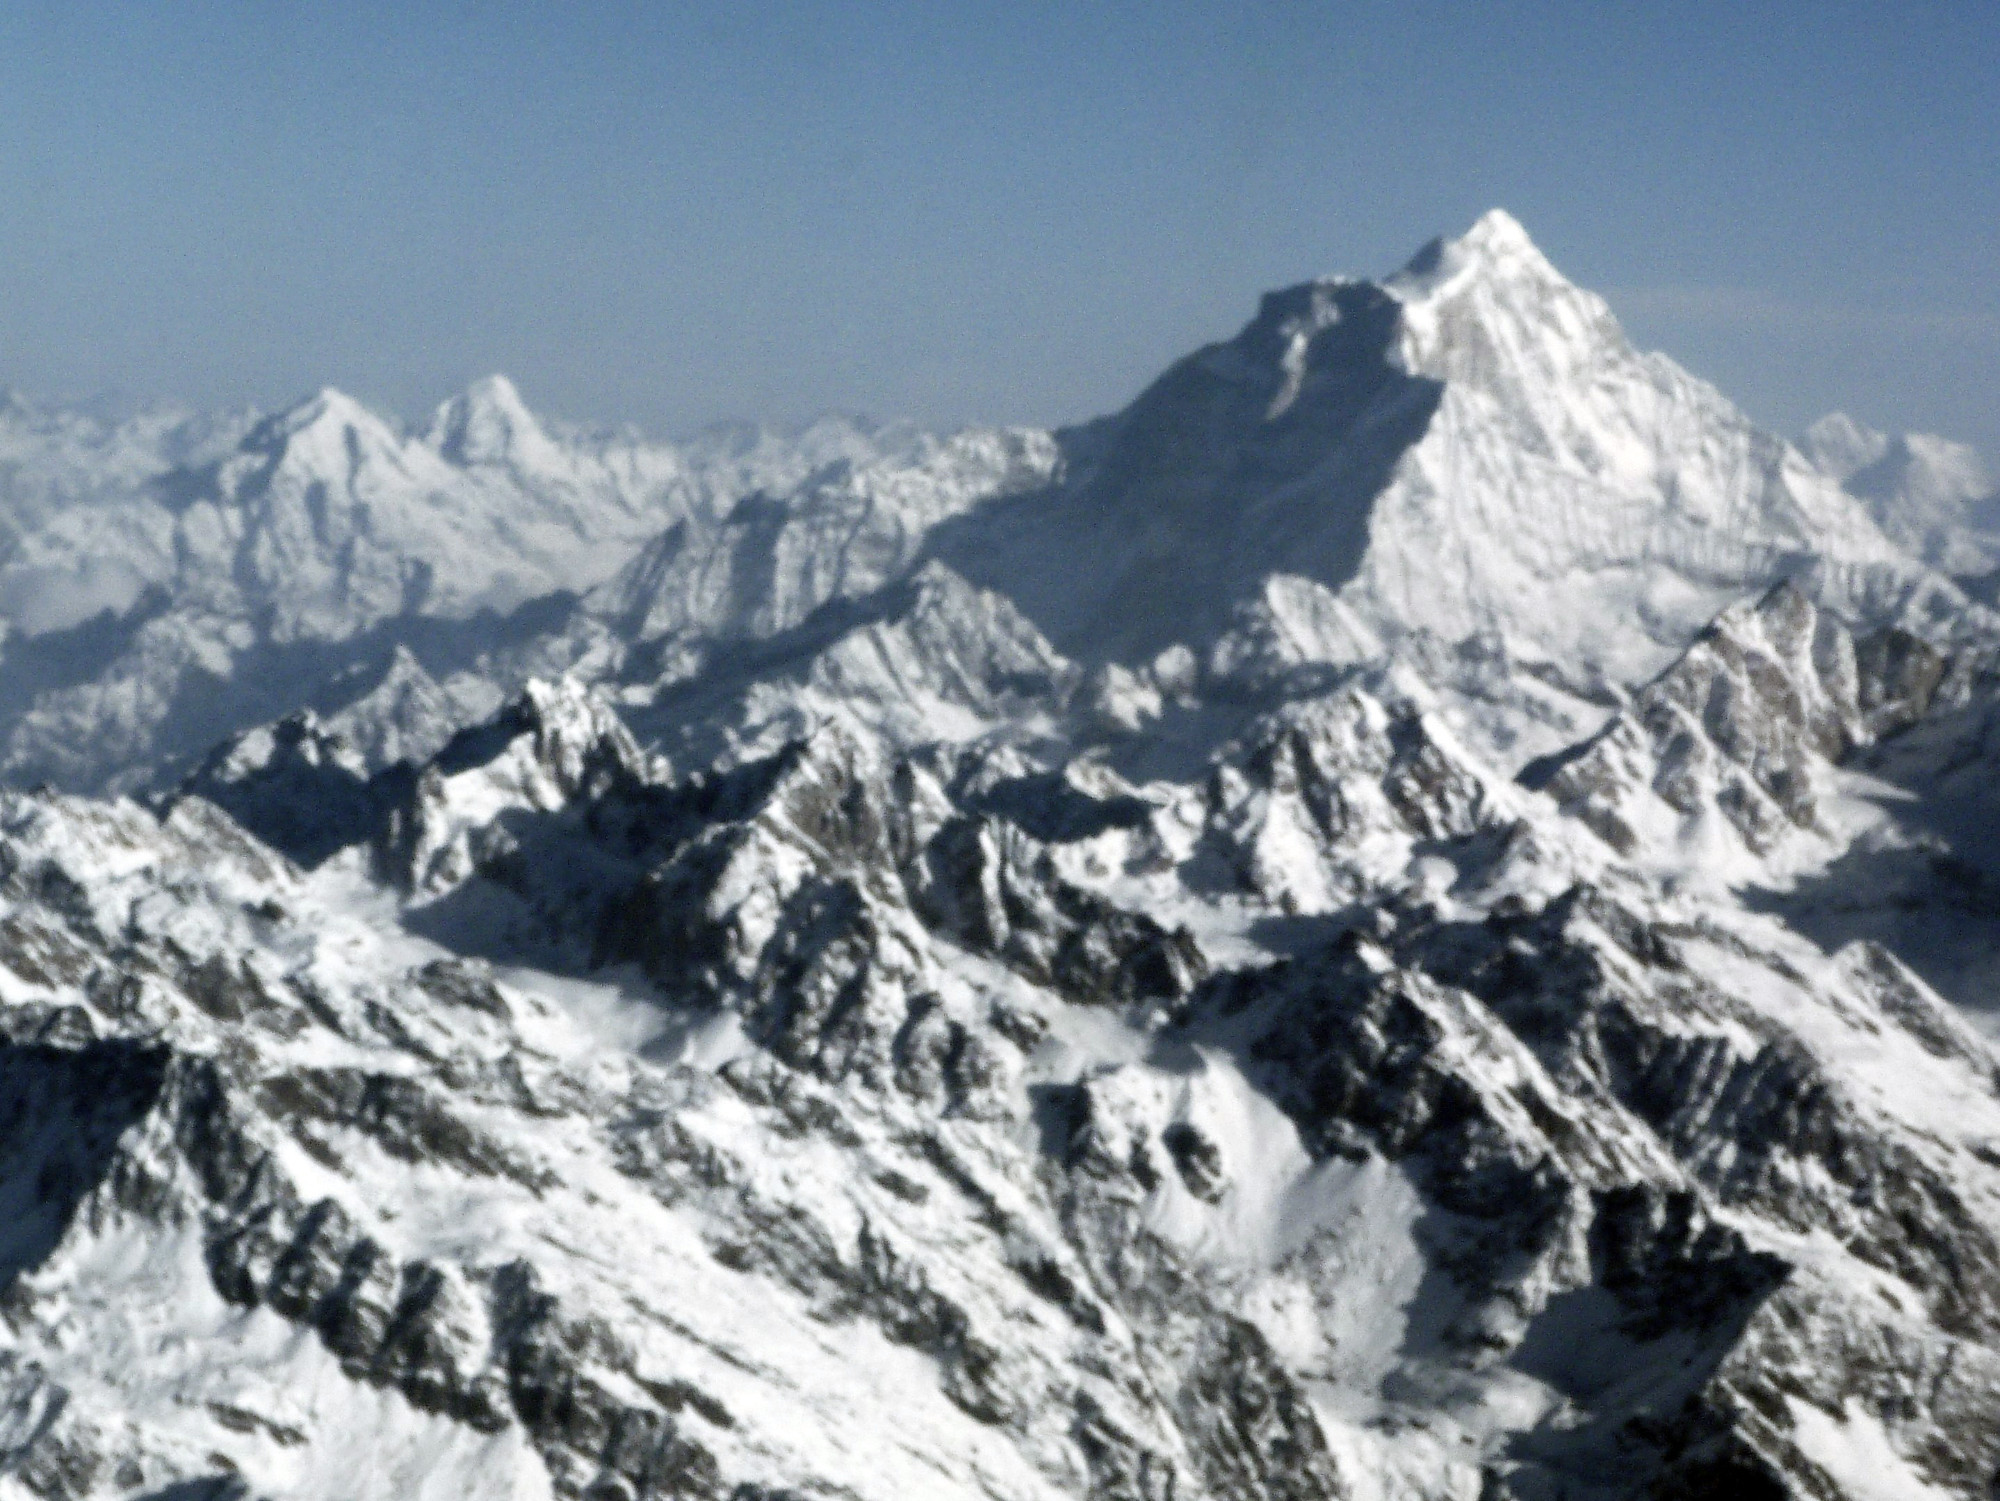 Himalayas